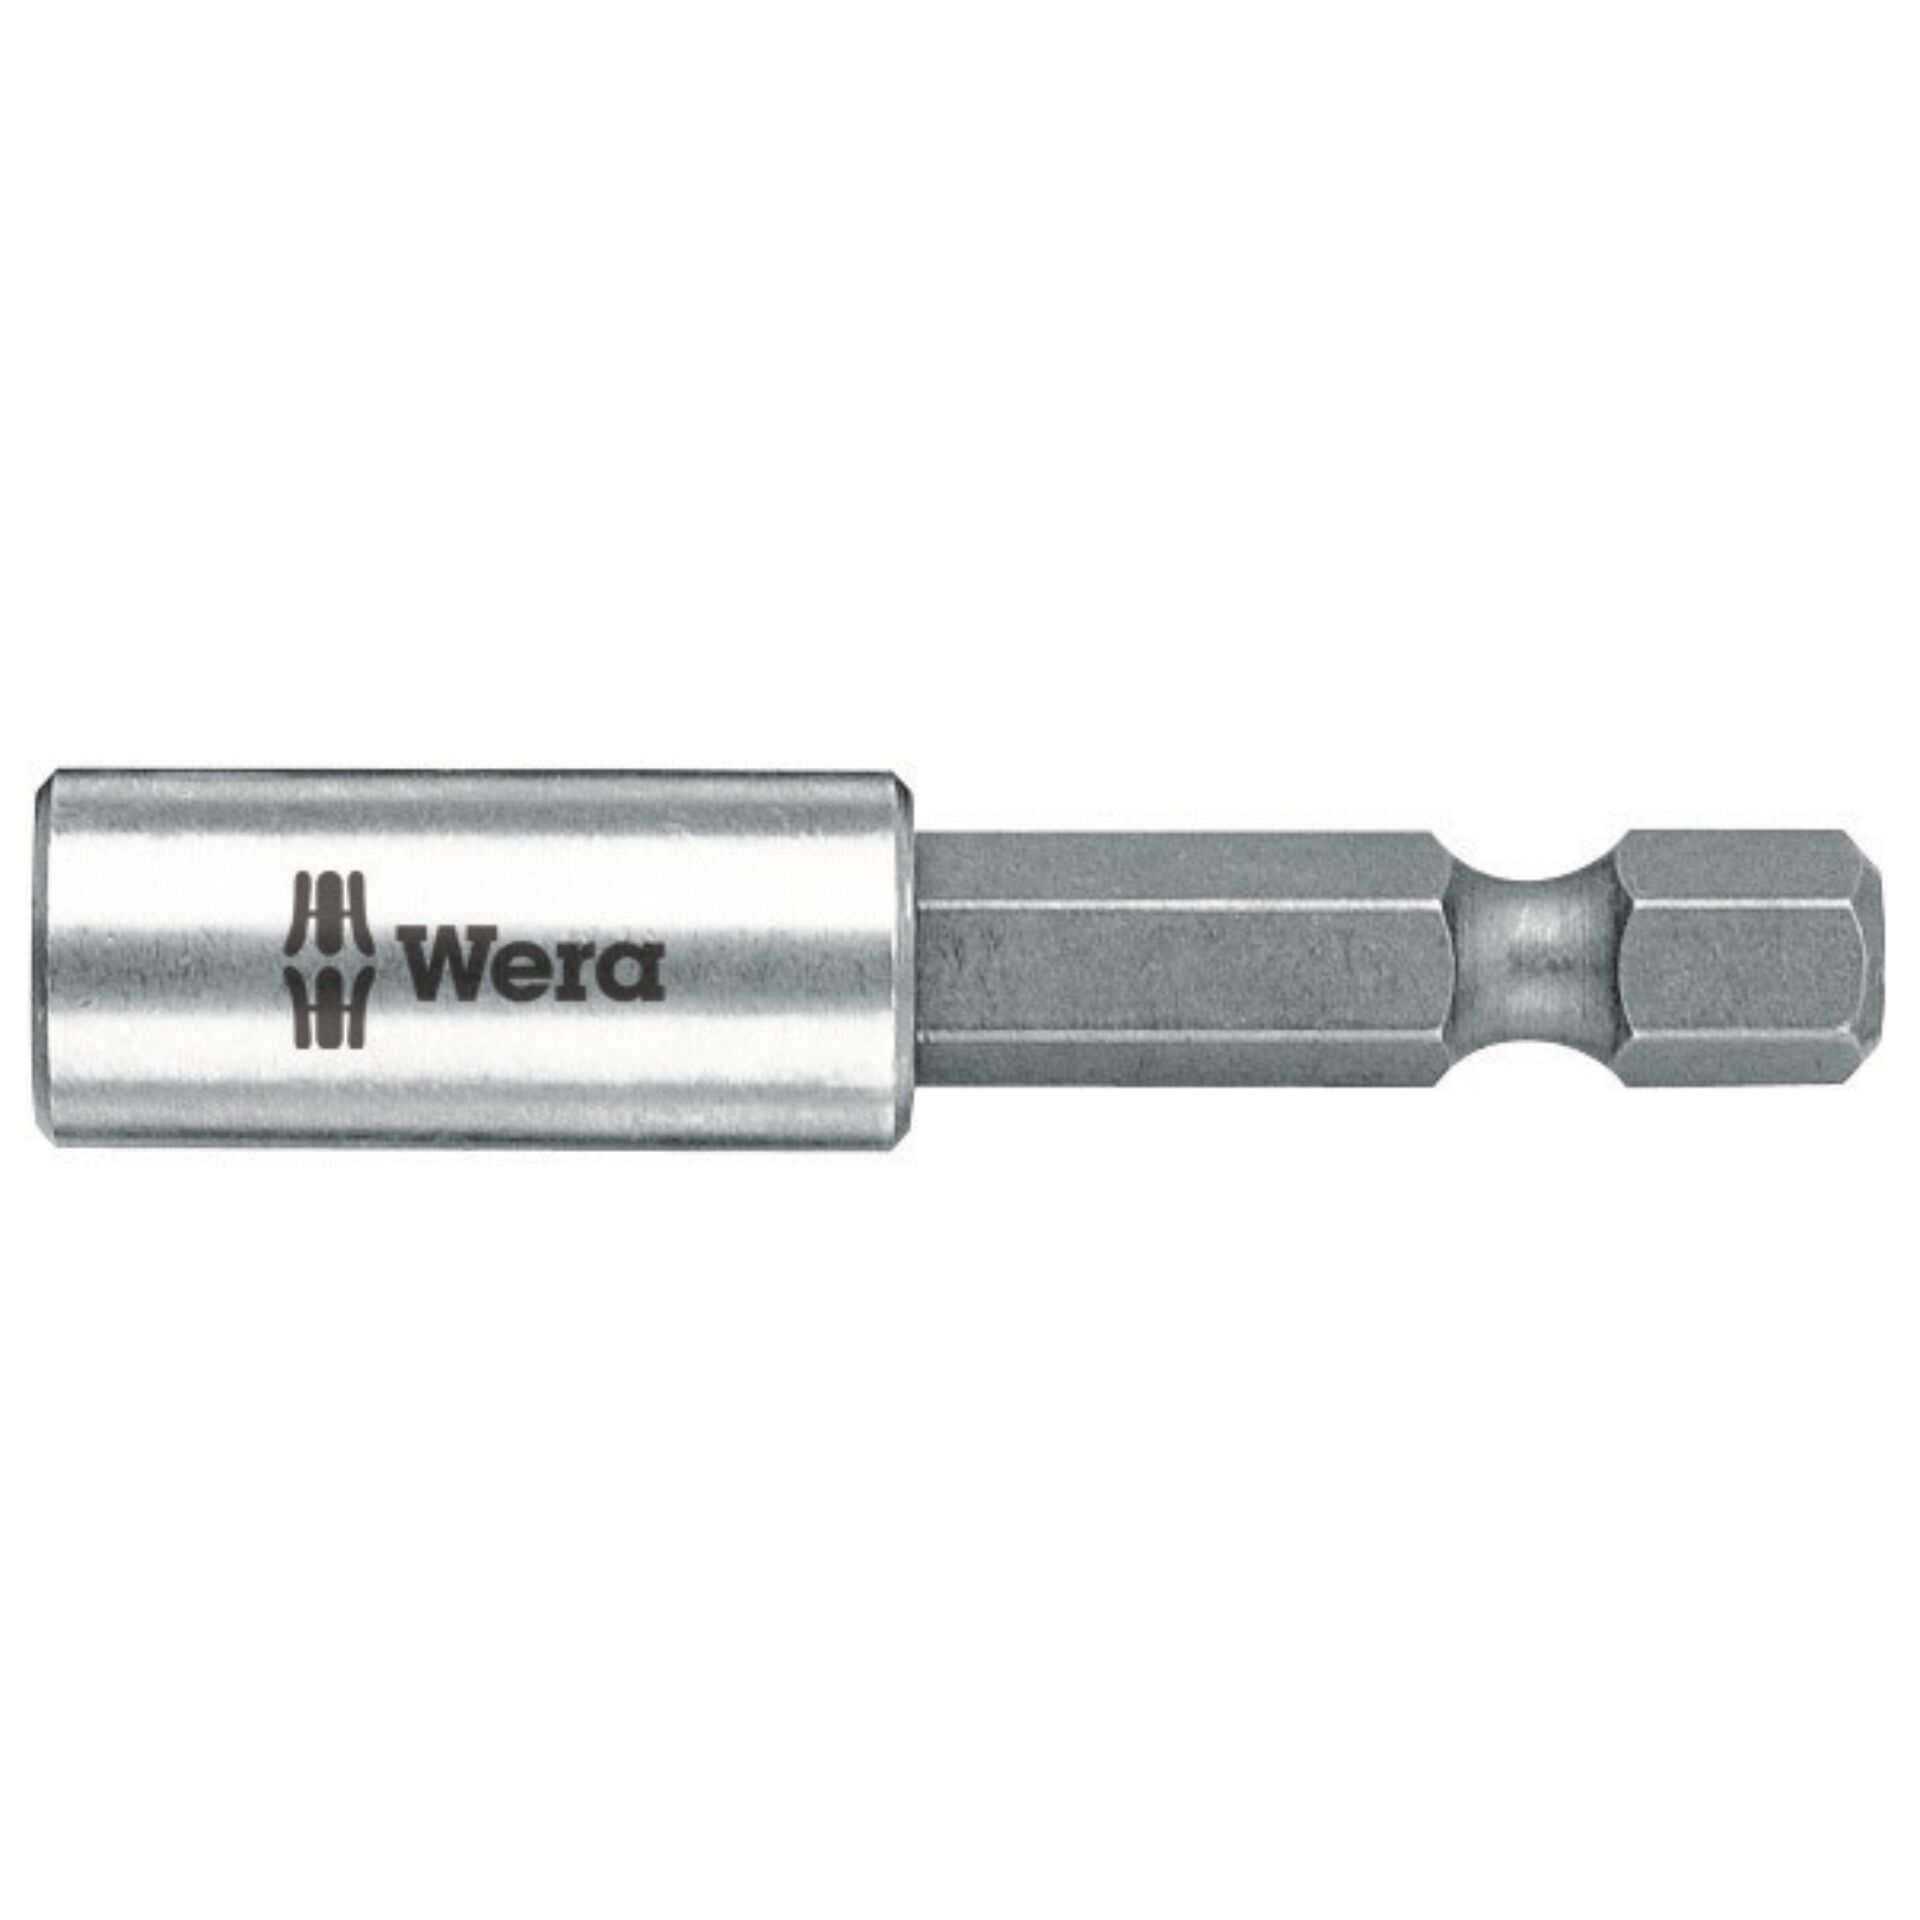 Wera 893/4/1 K Universalhalter